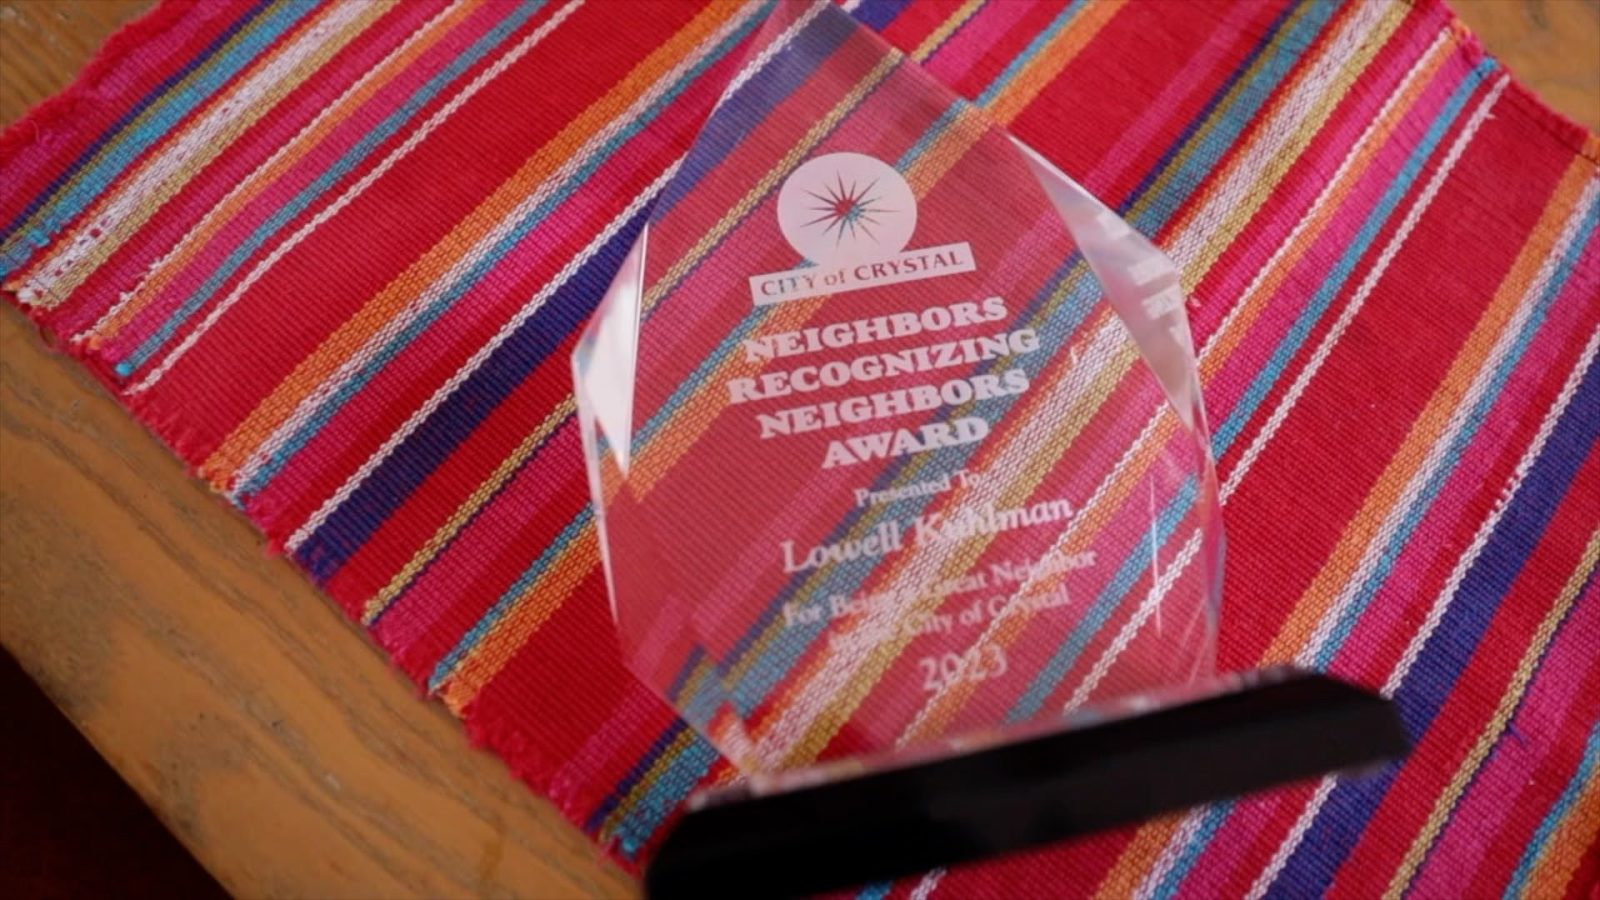 Crystal neighbor awards